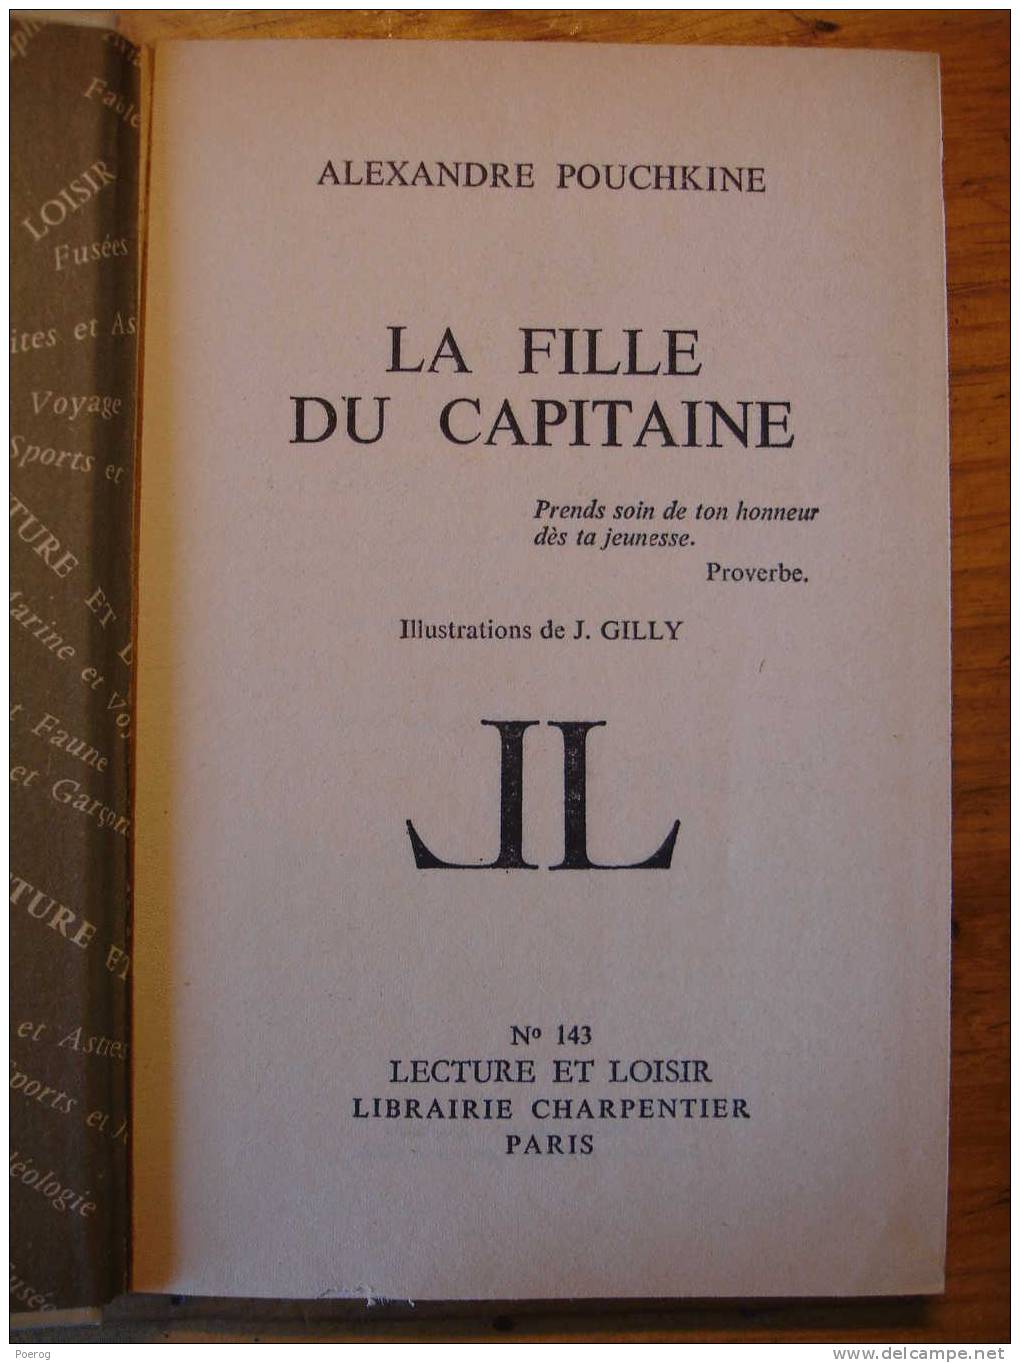 ALEXANDRE POUCHKINE - LA FILLE DU CAPITAINE - LECTURE ET LOISIR N°143 - LIBRAIRIE CHARPENTIER PARIS - 1969 - J. GILLY - Collection Lectures Et Loisirs